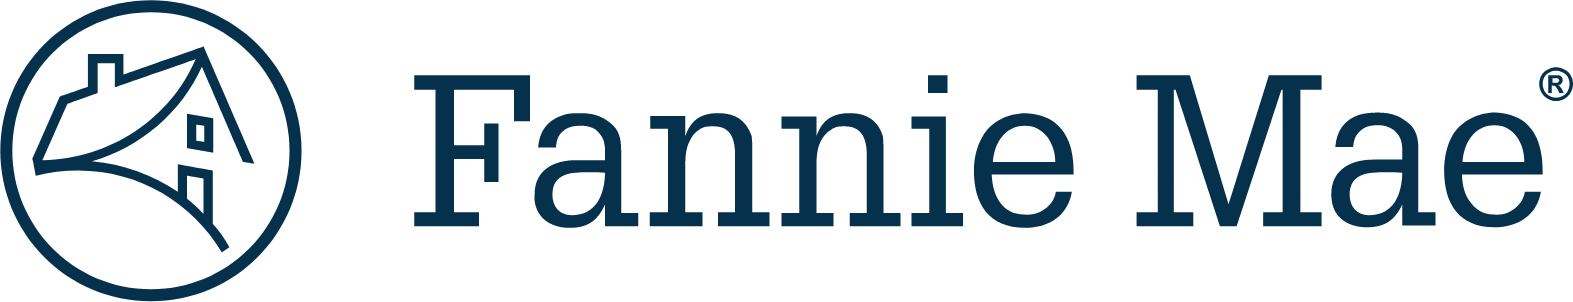 Fannie Mae
 logo large (transparent PNG)